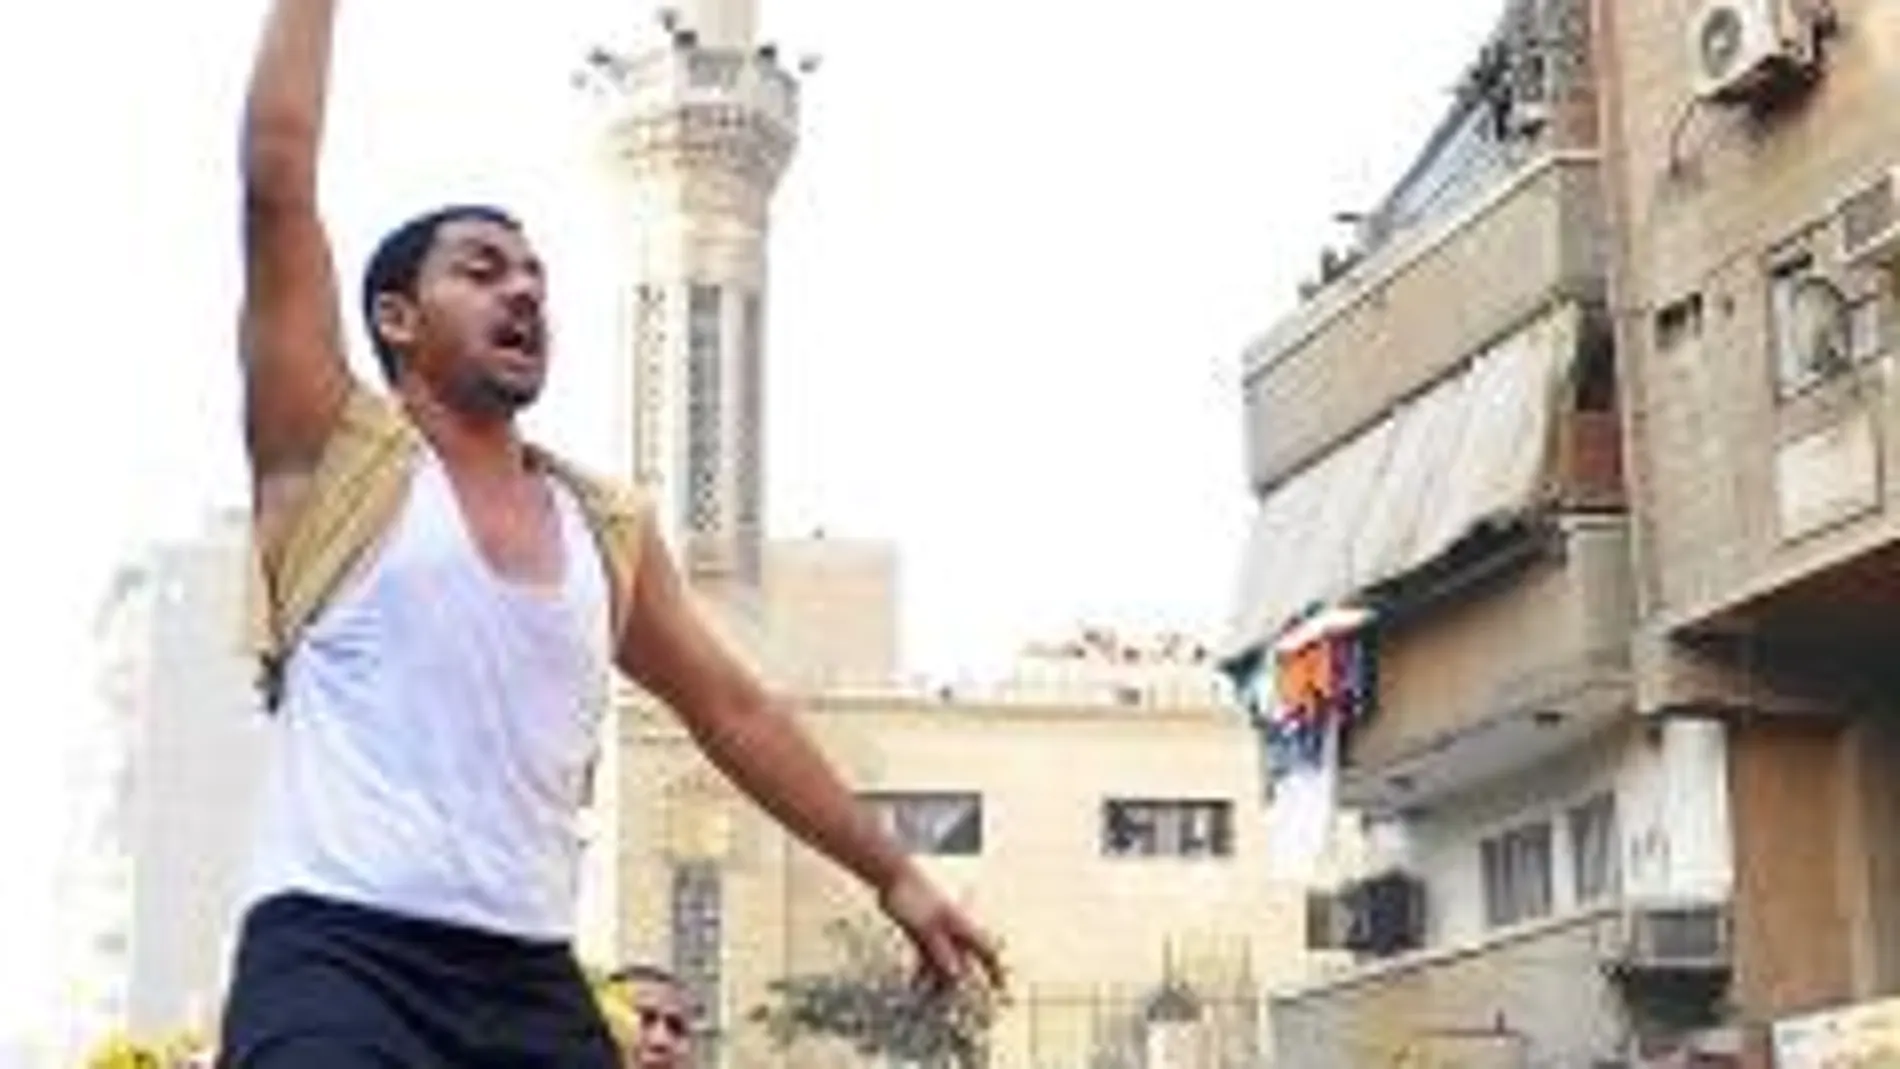 En noviembre se produjeron ataques islamistas contra cristianos coptos en El Cairo, que terminaron en enfrentamientos con la Policía